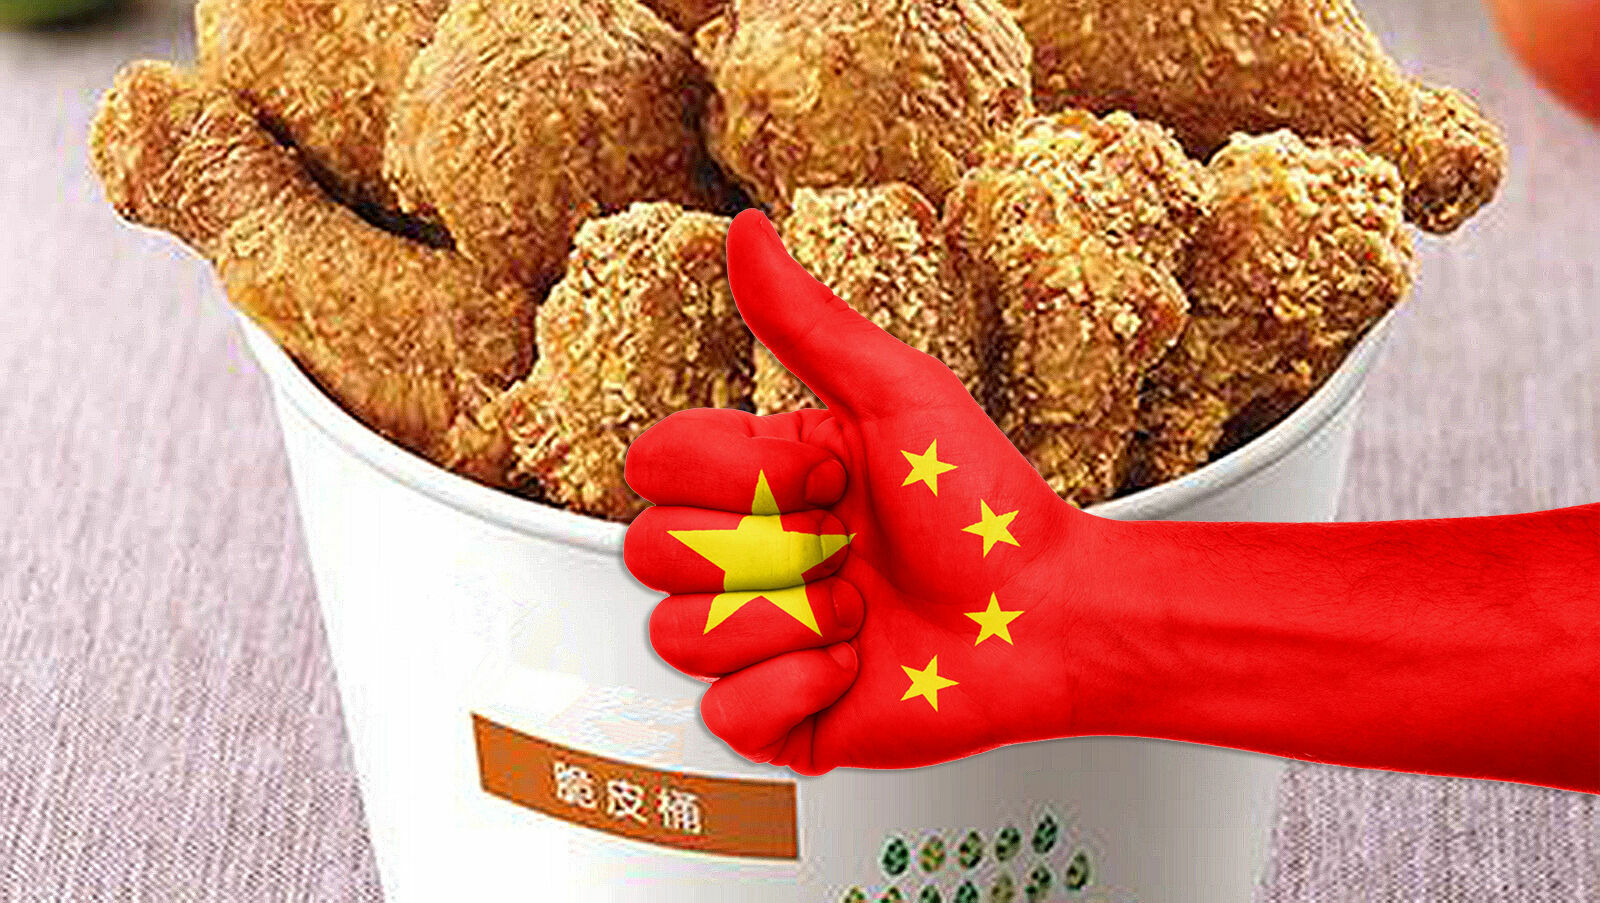 Китайский фаст-фуд заменит McDonald's и другие западные сети. Или не сможет?